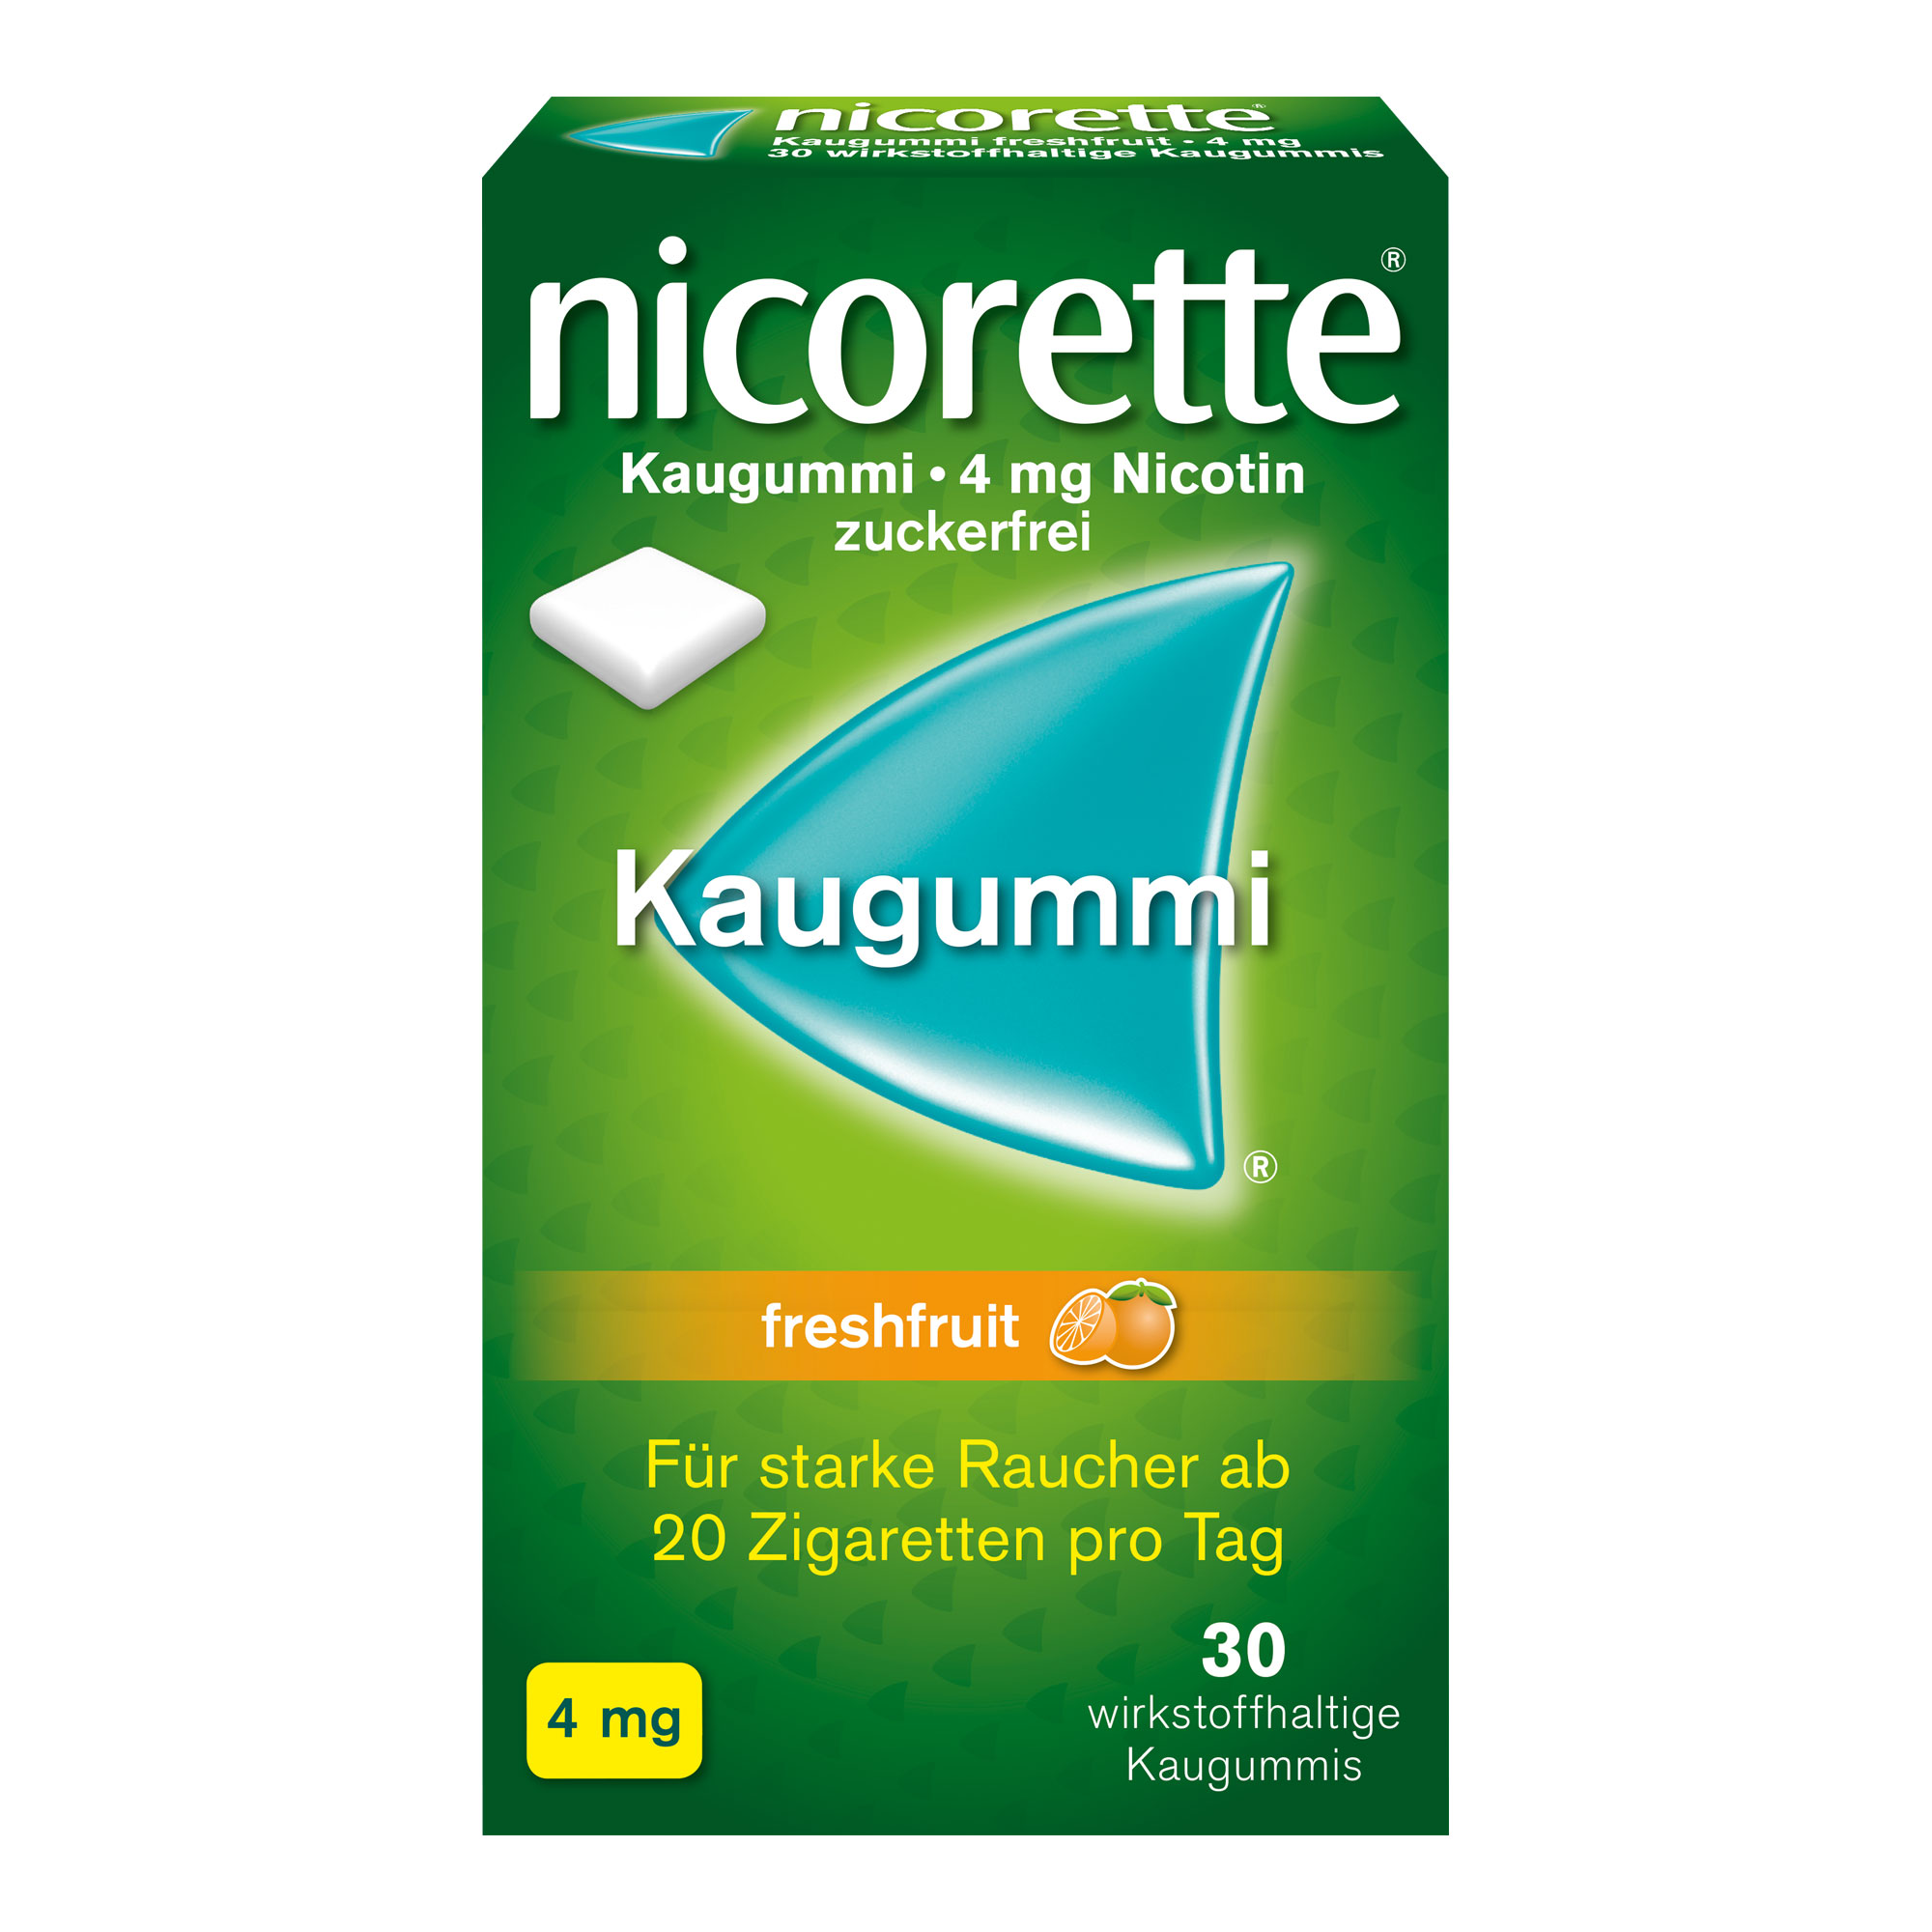 nicorette® Kaugummi freshfruit mit 4 mg Nikotin lindert sowohl Rauchverlangen als auch typische Entzugssymptome während der Raucherentwöhnung. Mit Fruchtgeschmack.